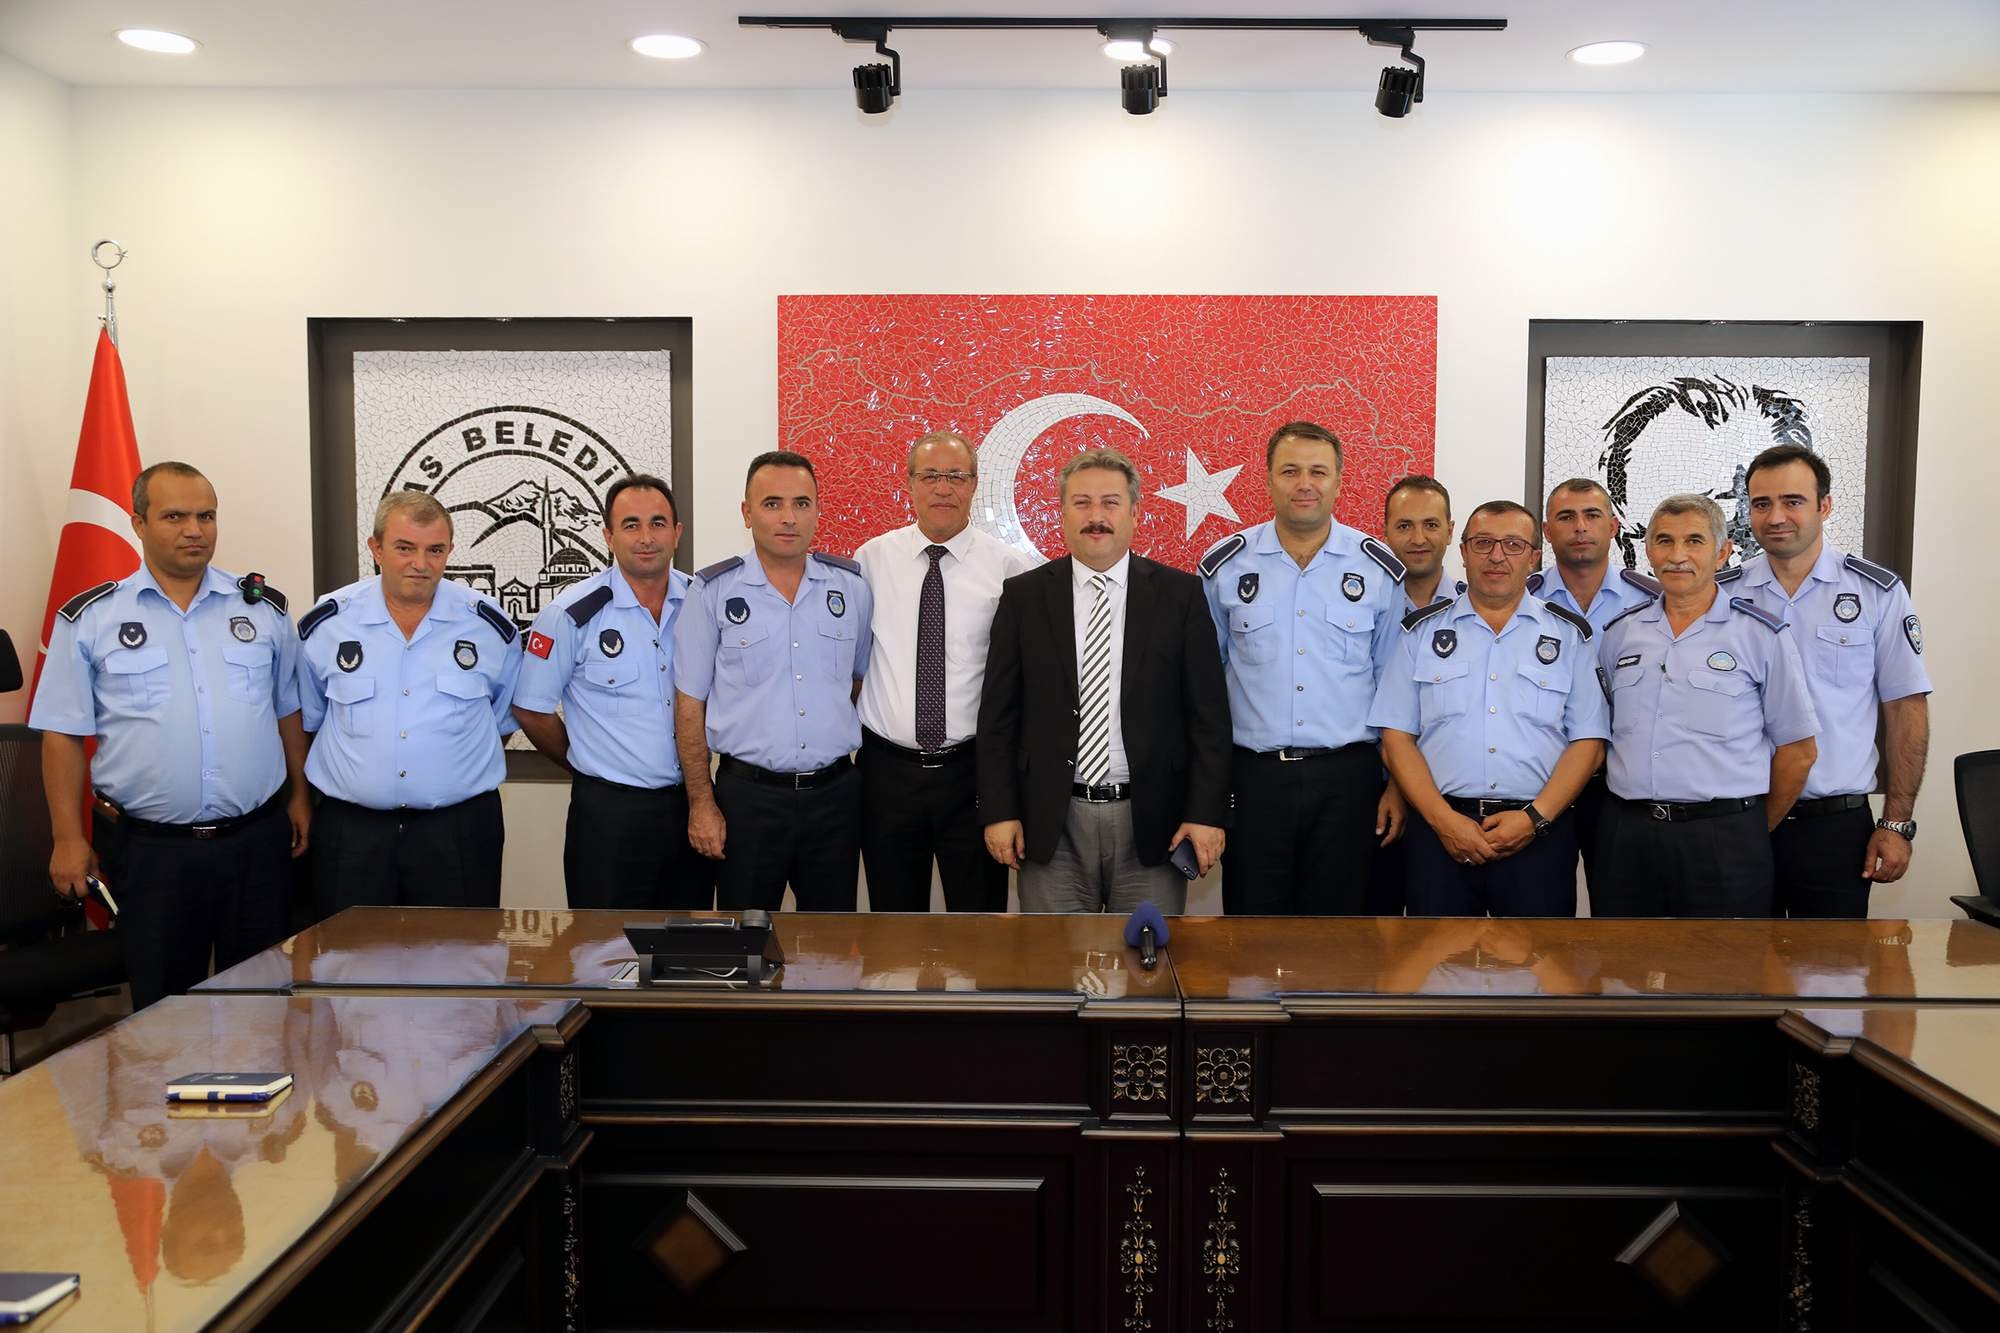 Başkan Palancıoğlu: “Zabıta belediyemizin yüzü”